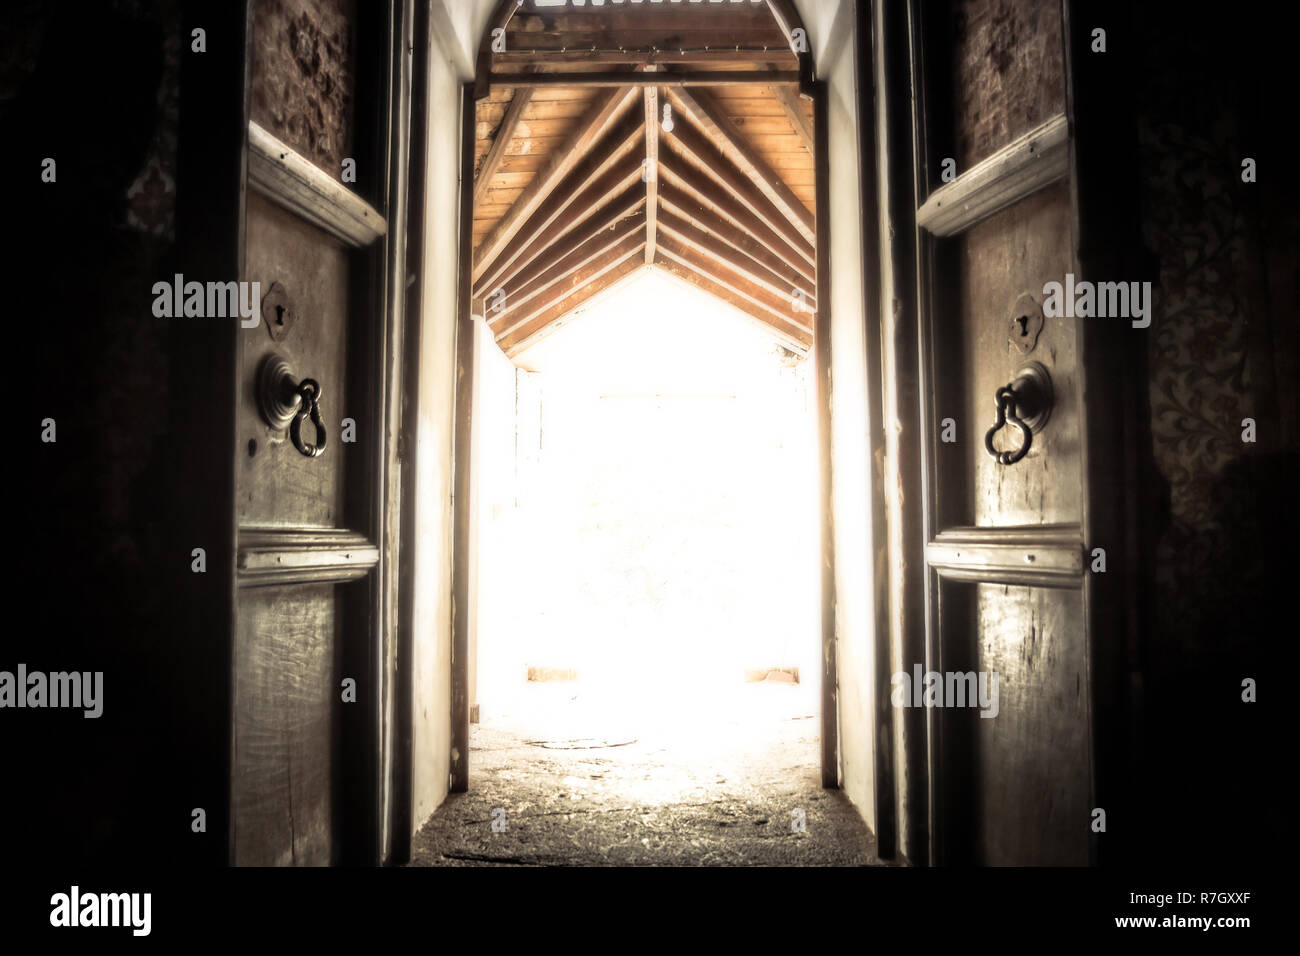 Geöffnet alte Tempel Tür Tor mit Strahlen Licht mit Wirkung von Licht am Ende des Tunnels Stockfoto